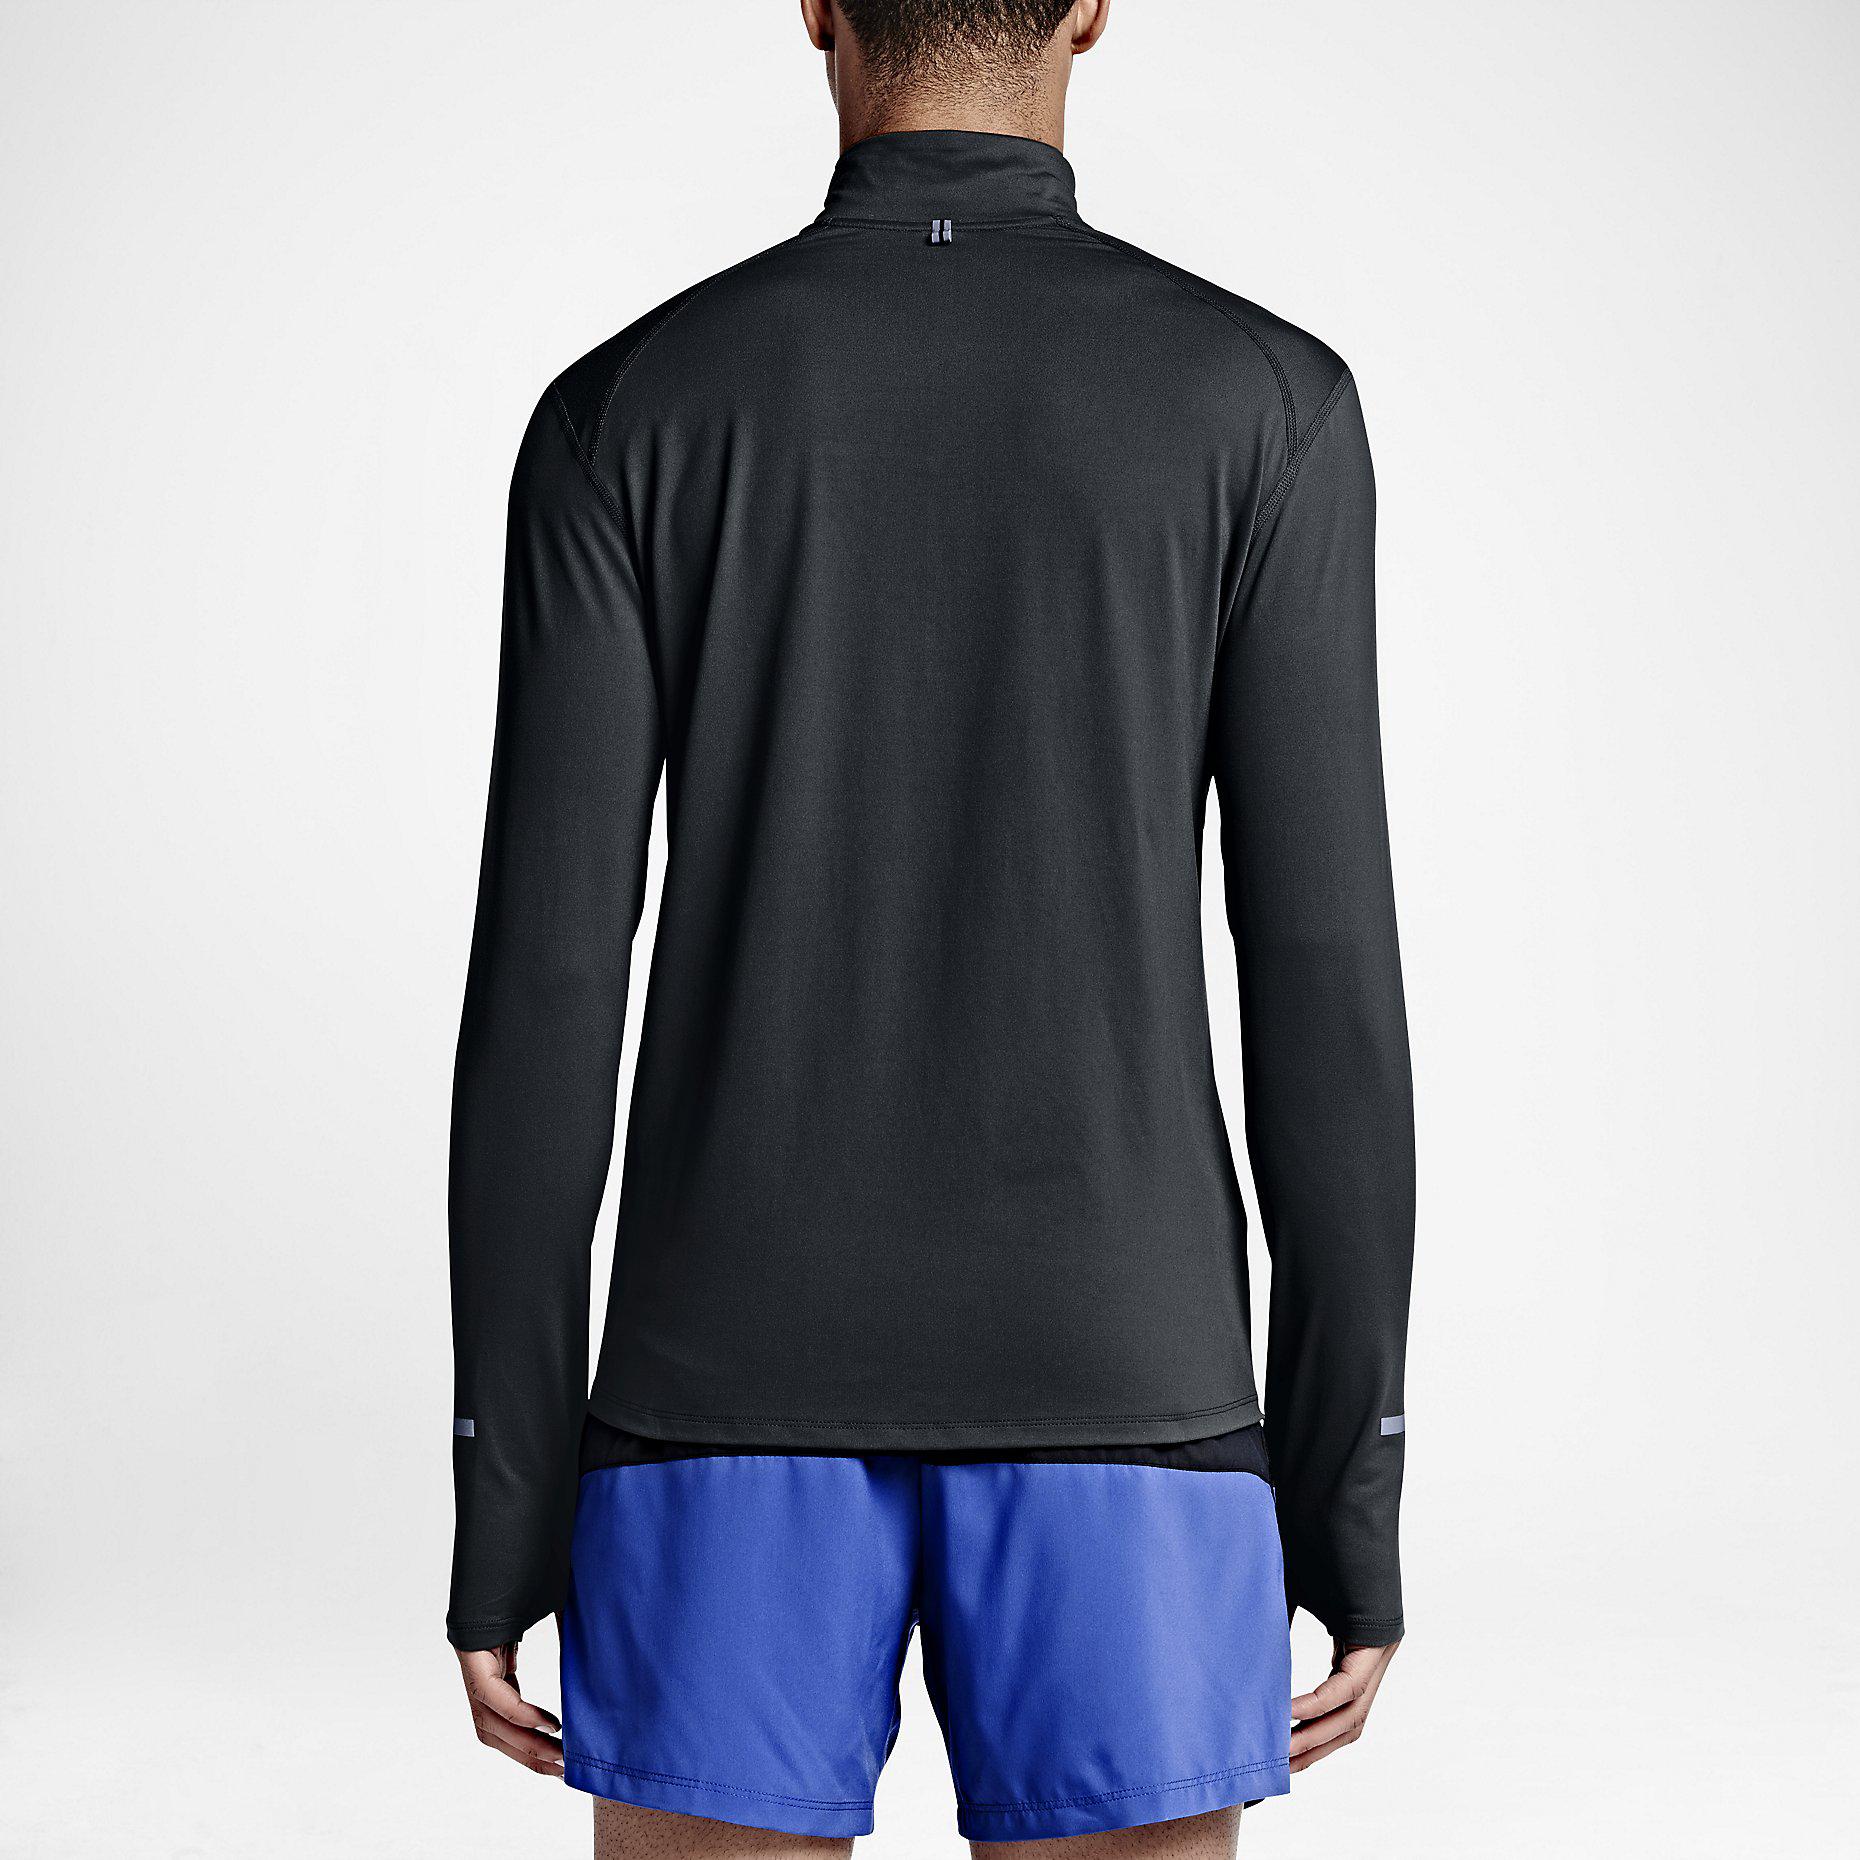 Nike Mens Dri-FIT Element Half-Zip Top - Black - Tennisnuts.com